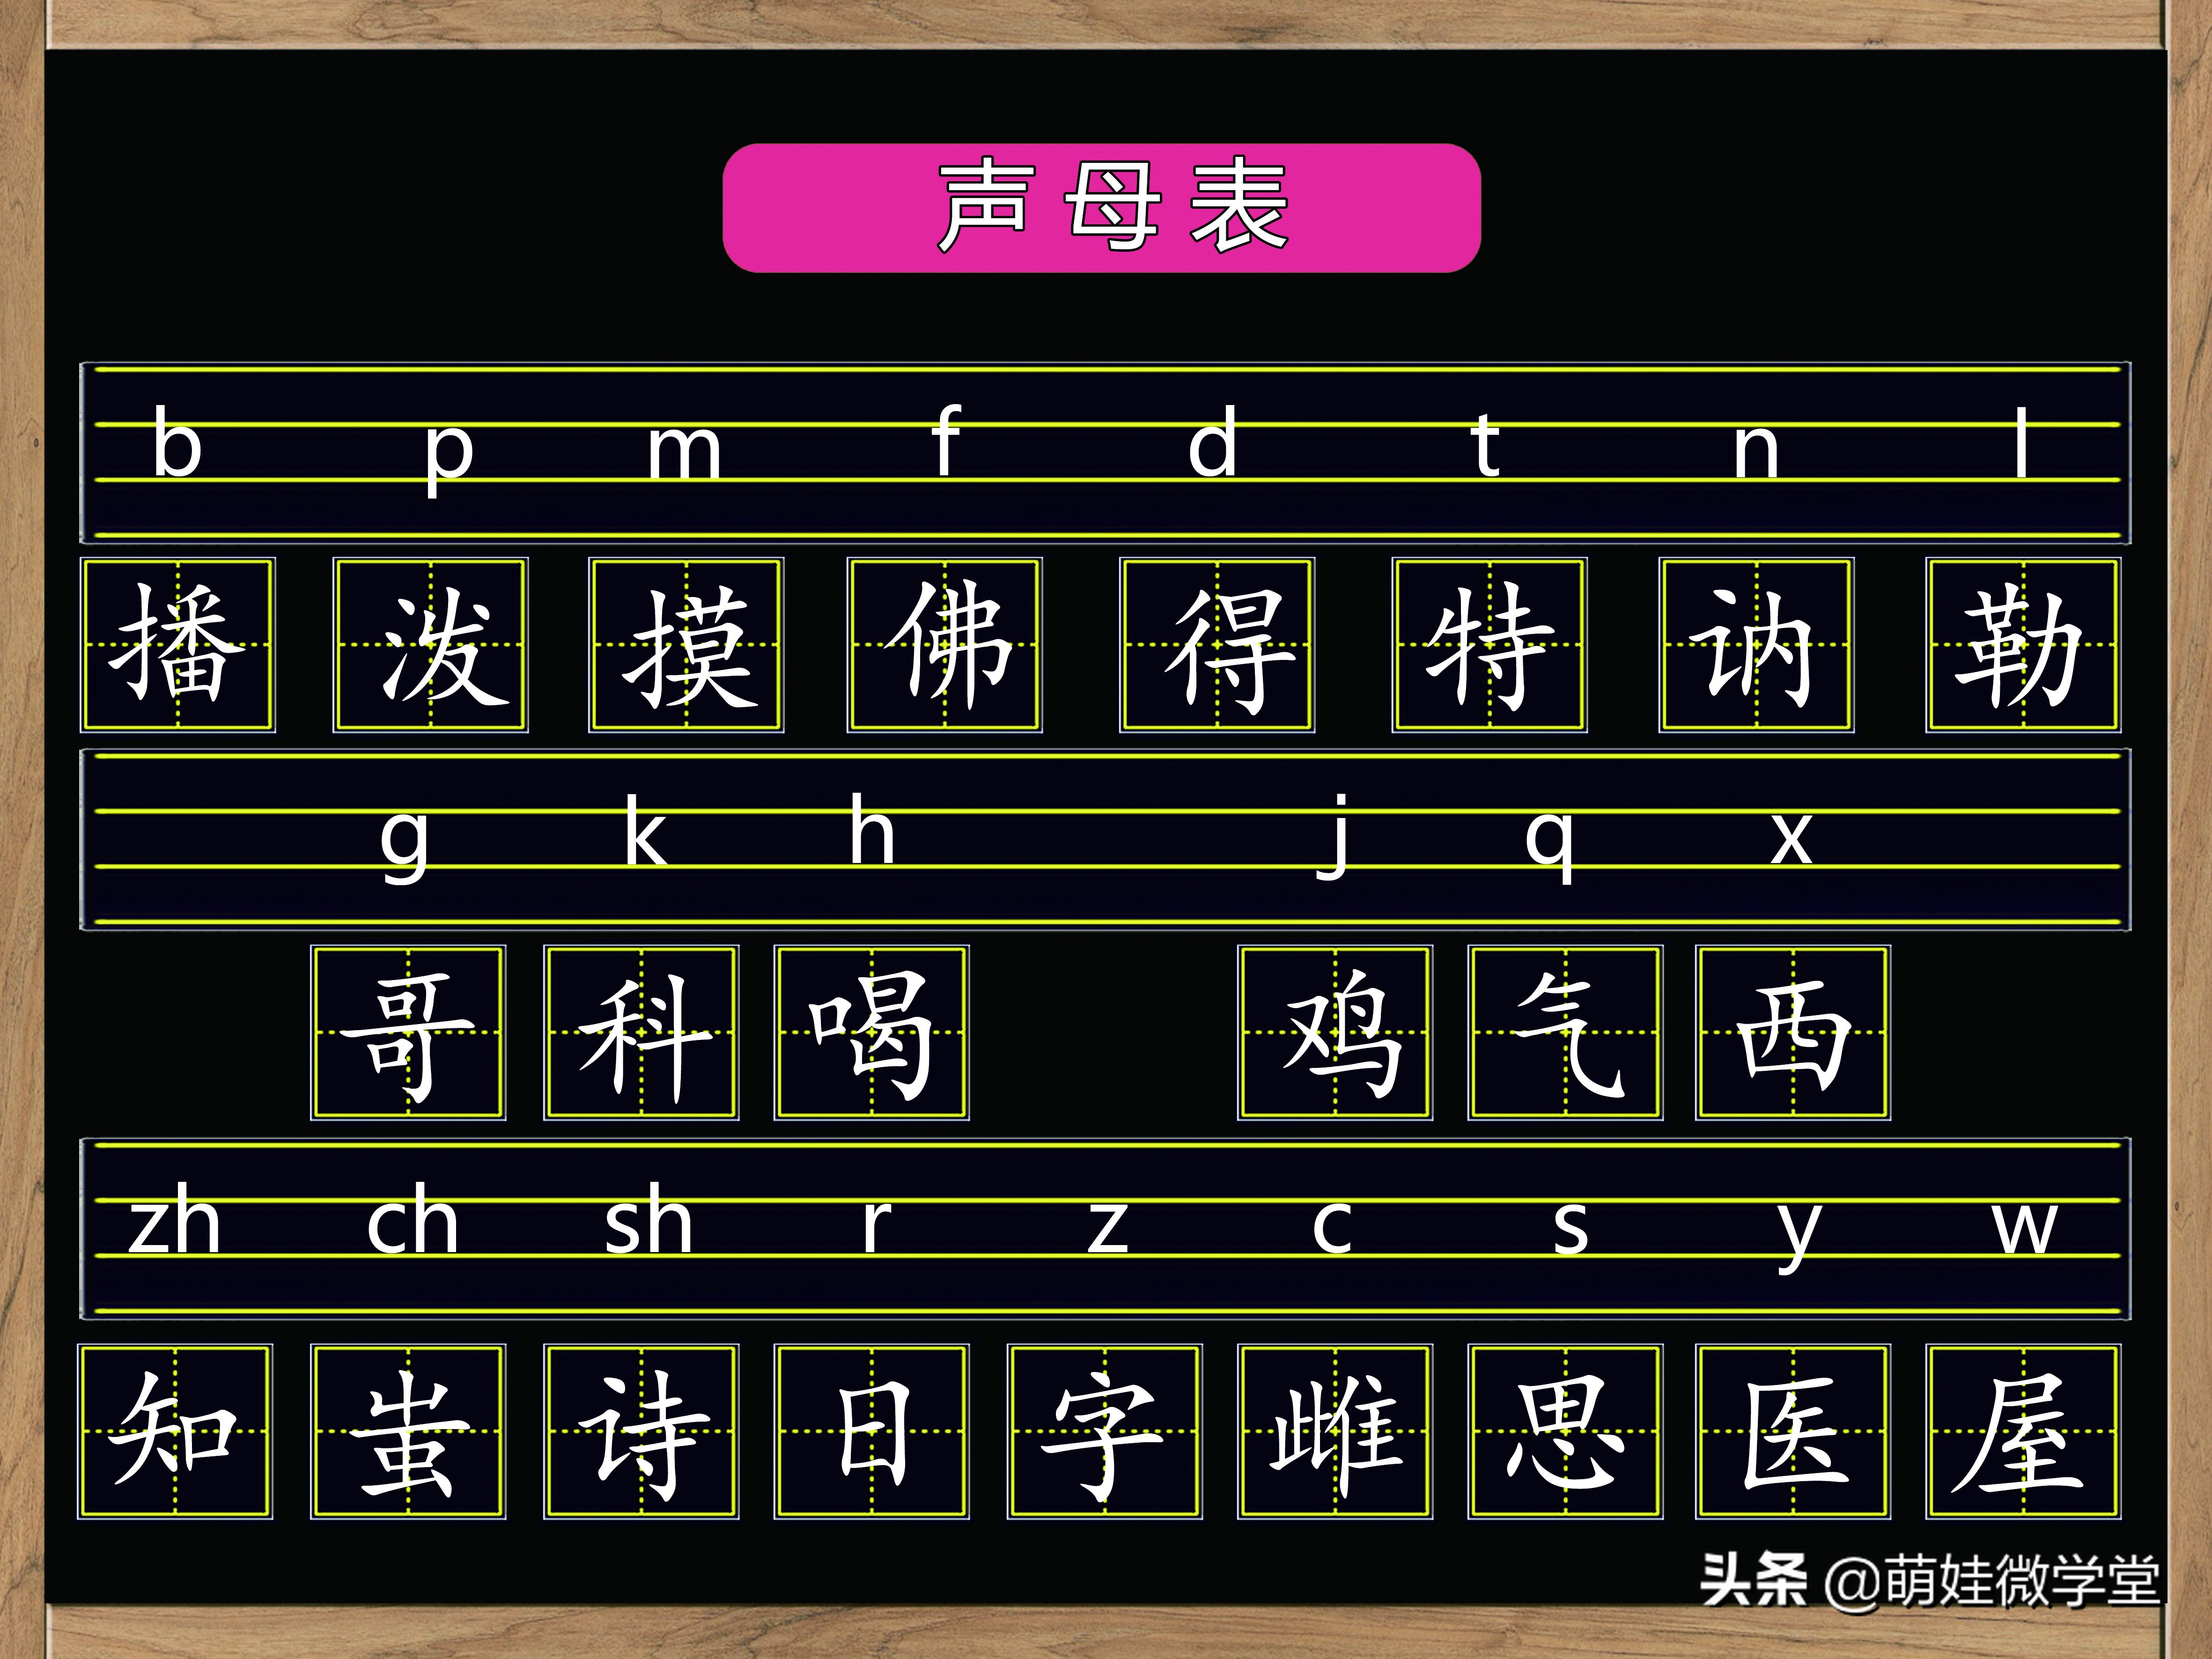 汉语拼音韵母、声母、整体认读音节各有多少个，孩子记清楚了吗？